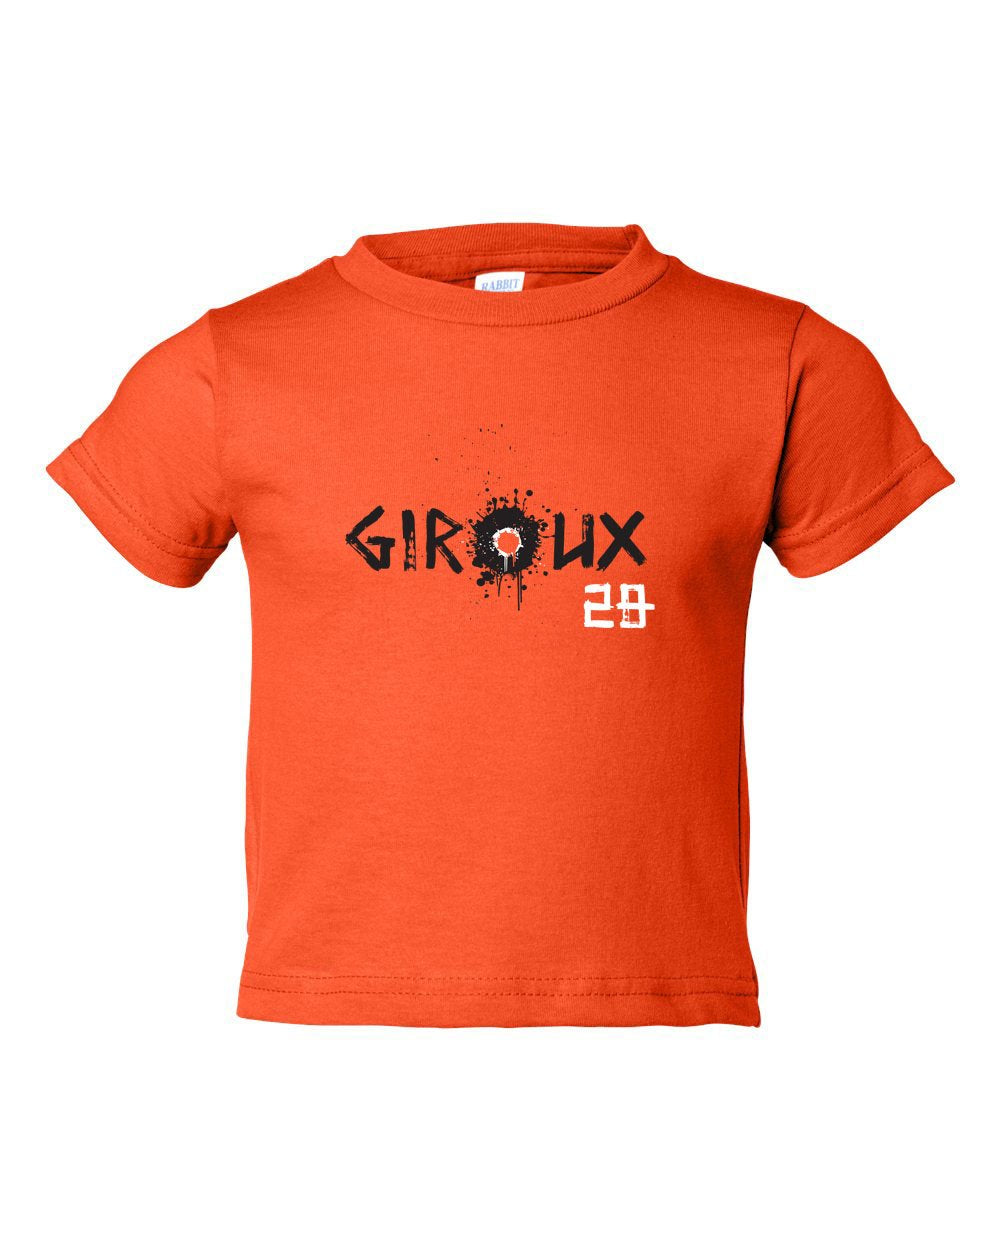 Giroux Splatter Art TODDLER T-Shirt